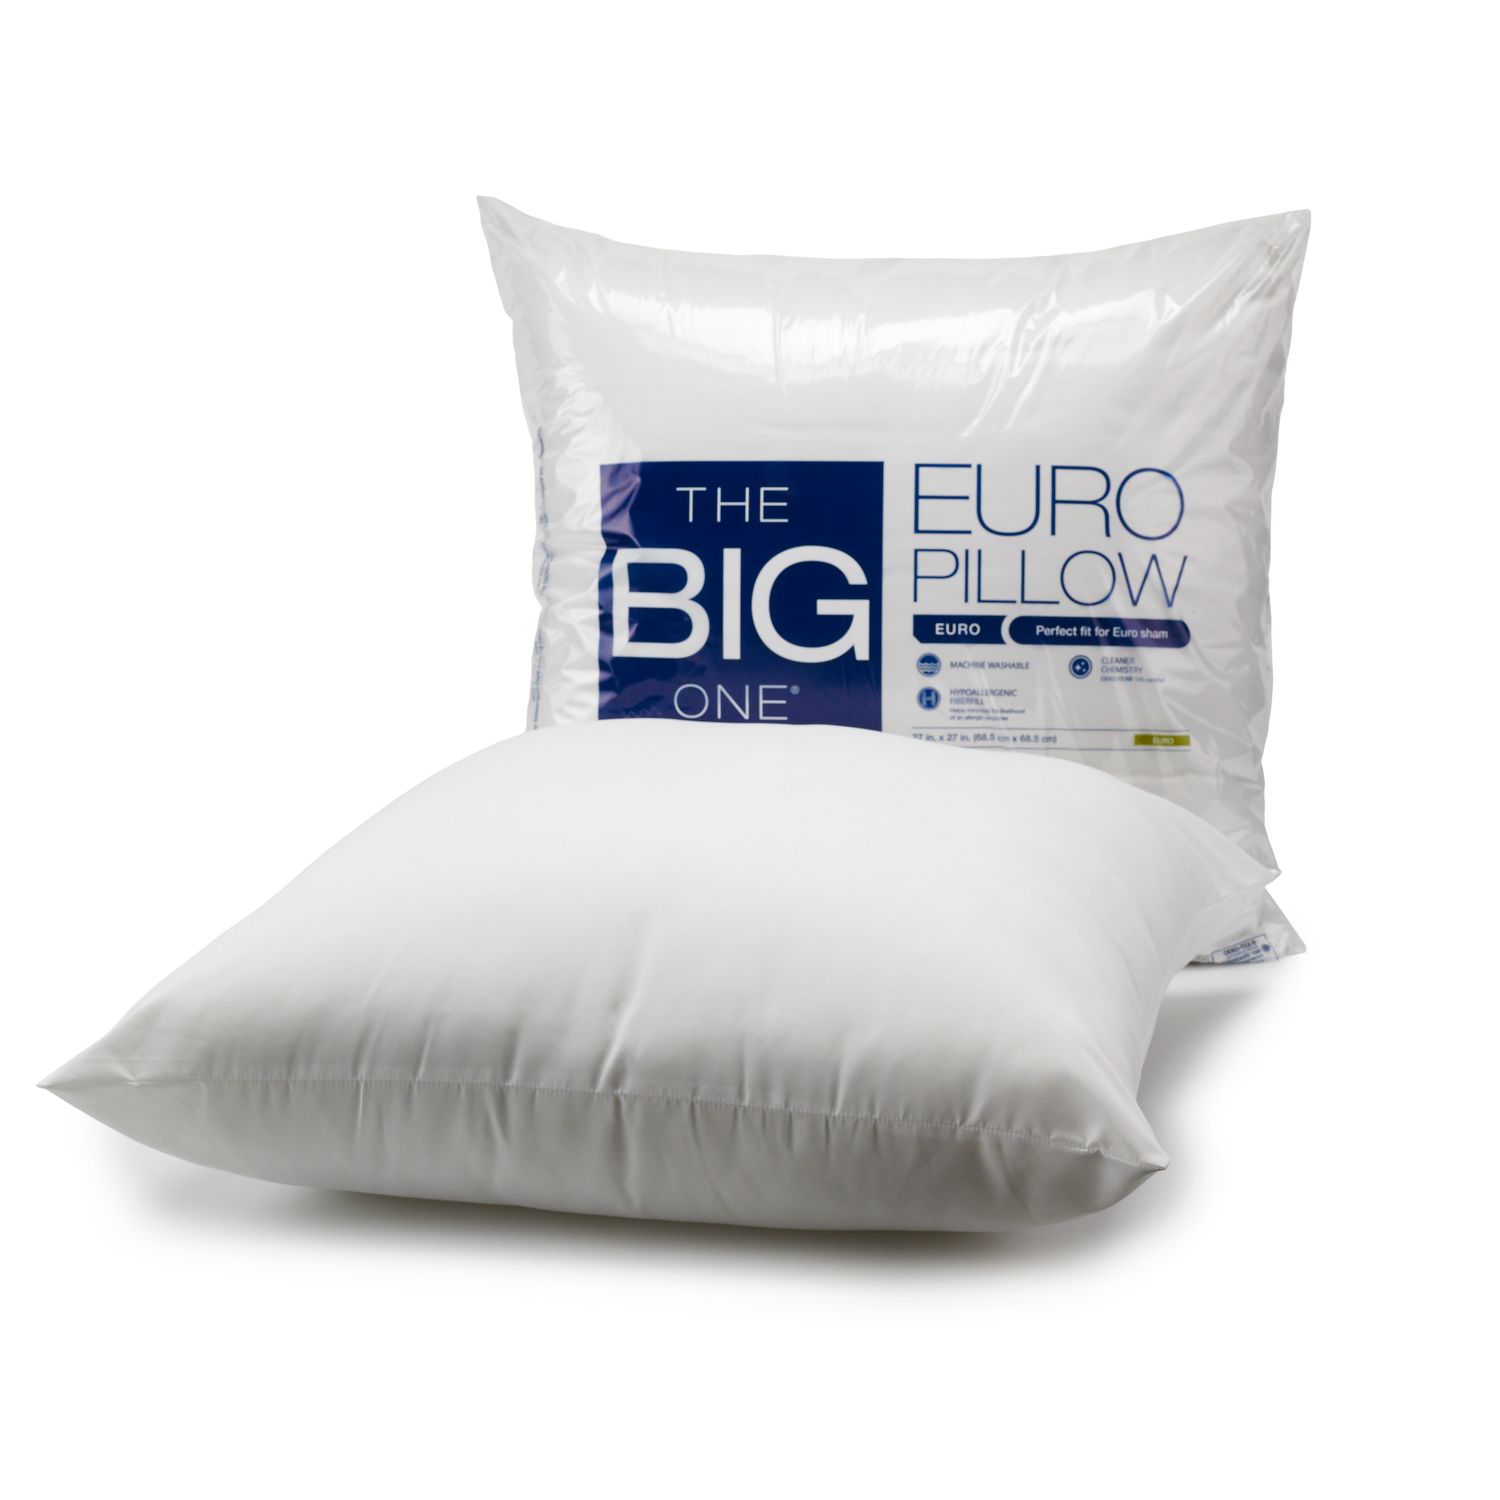 euro pillows